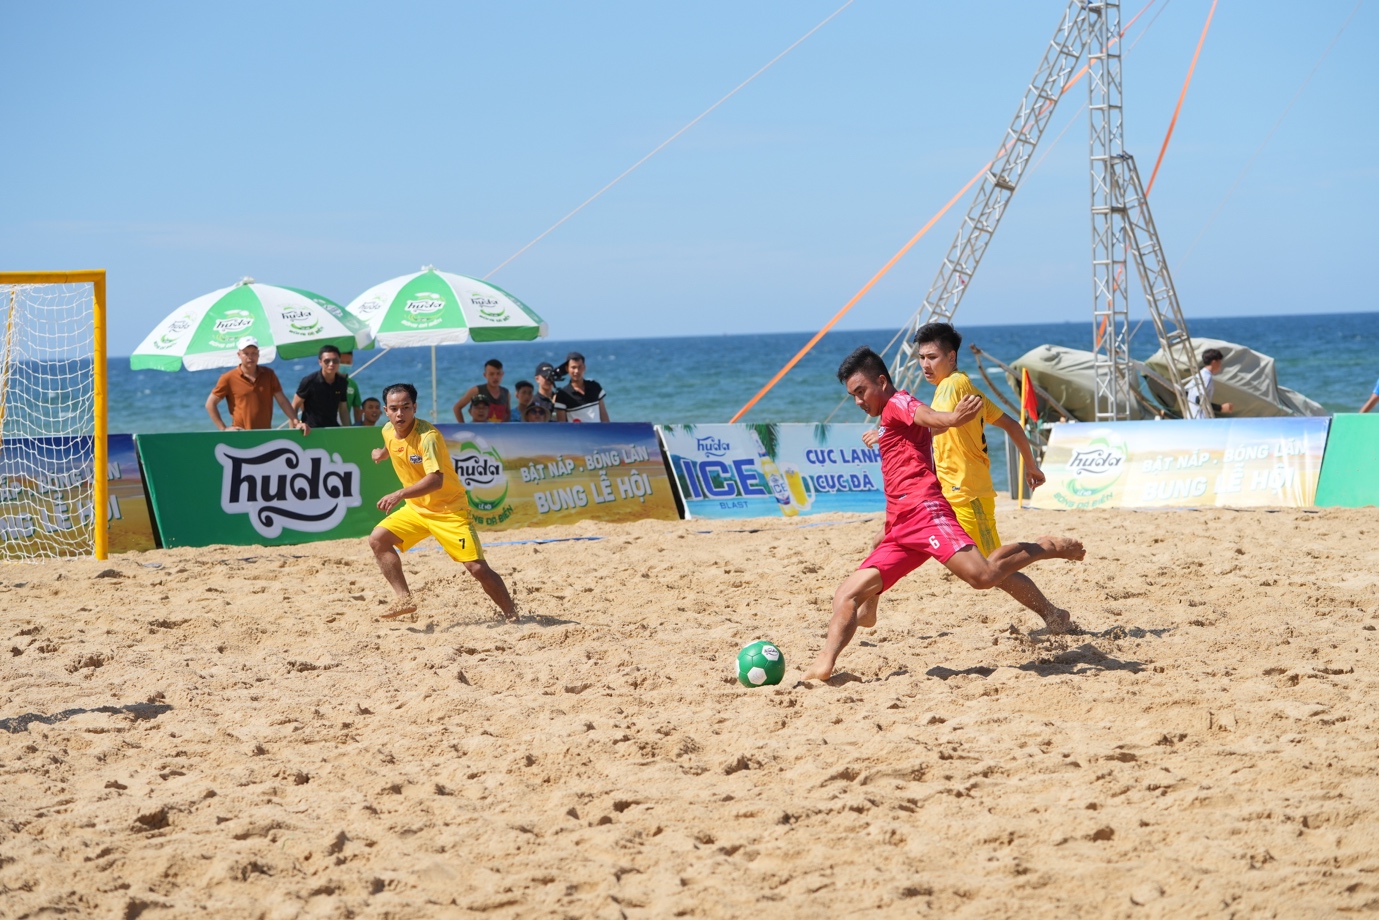 Mùa hè miền Trung “rực lửa” cùng Lễ hội bóng đá biển Huda 2022 - Ảnh 6.